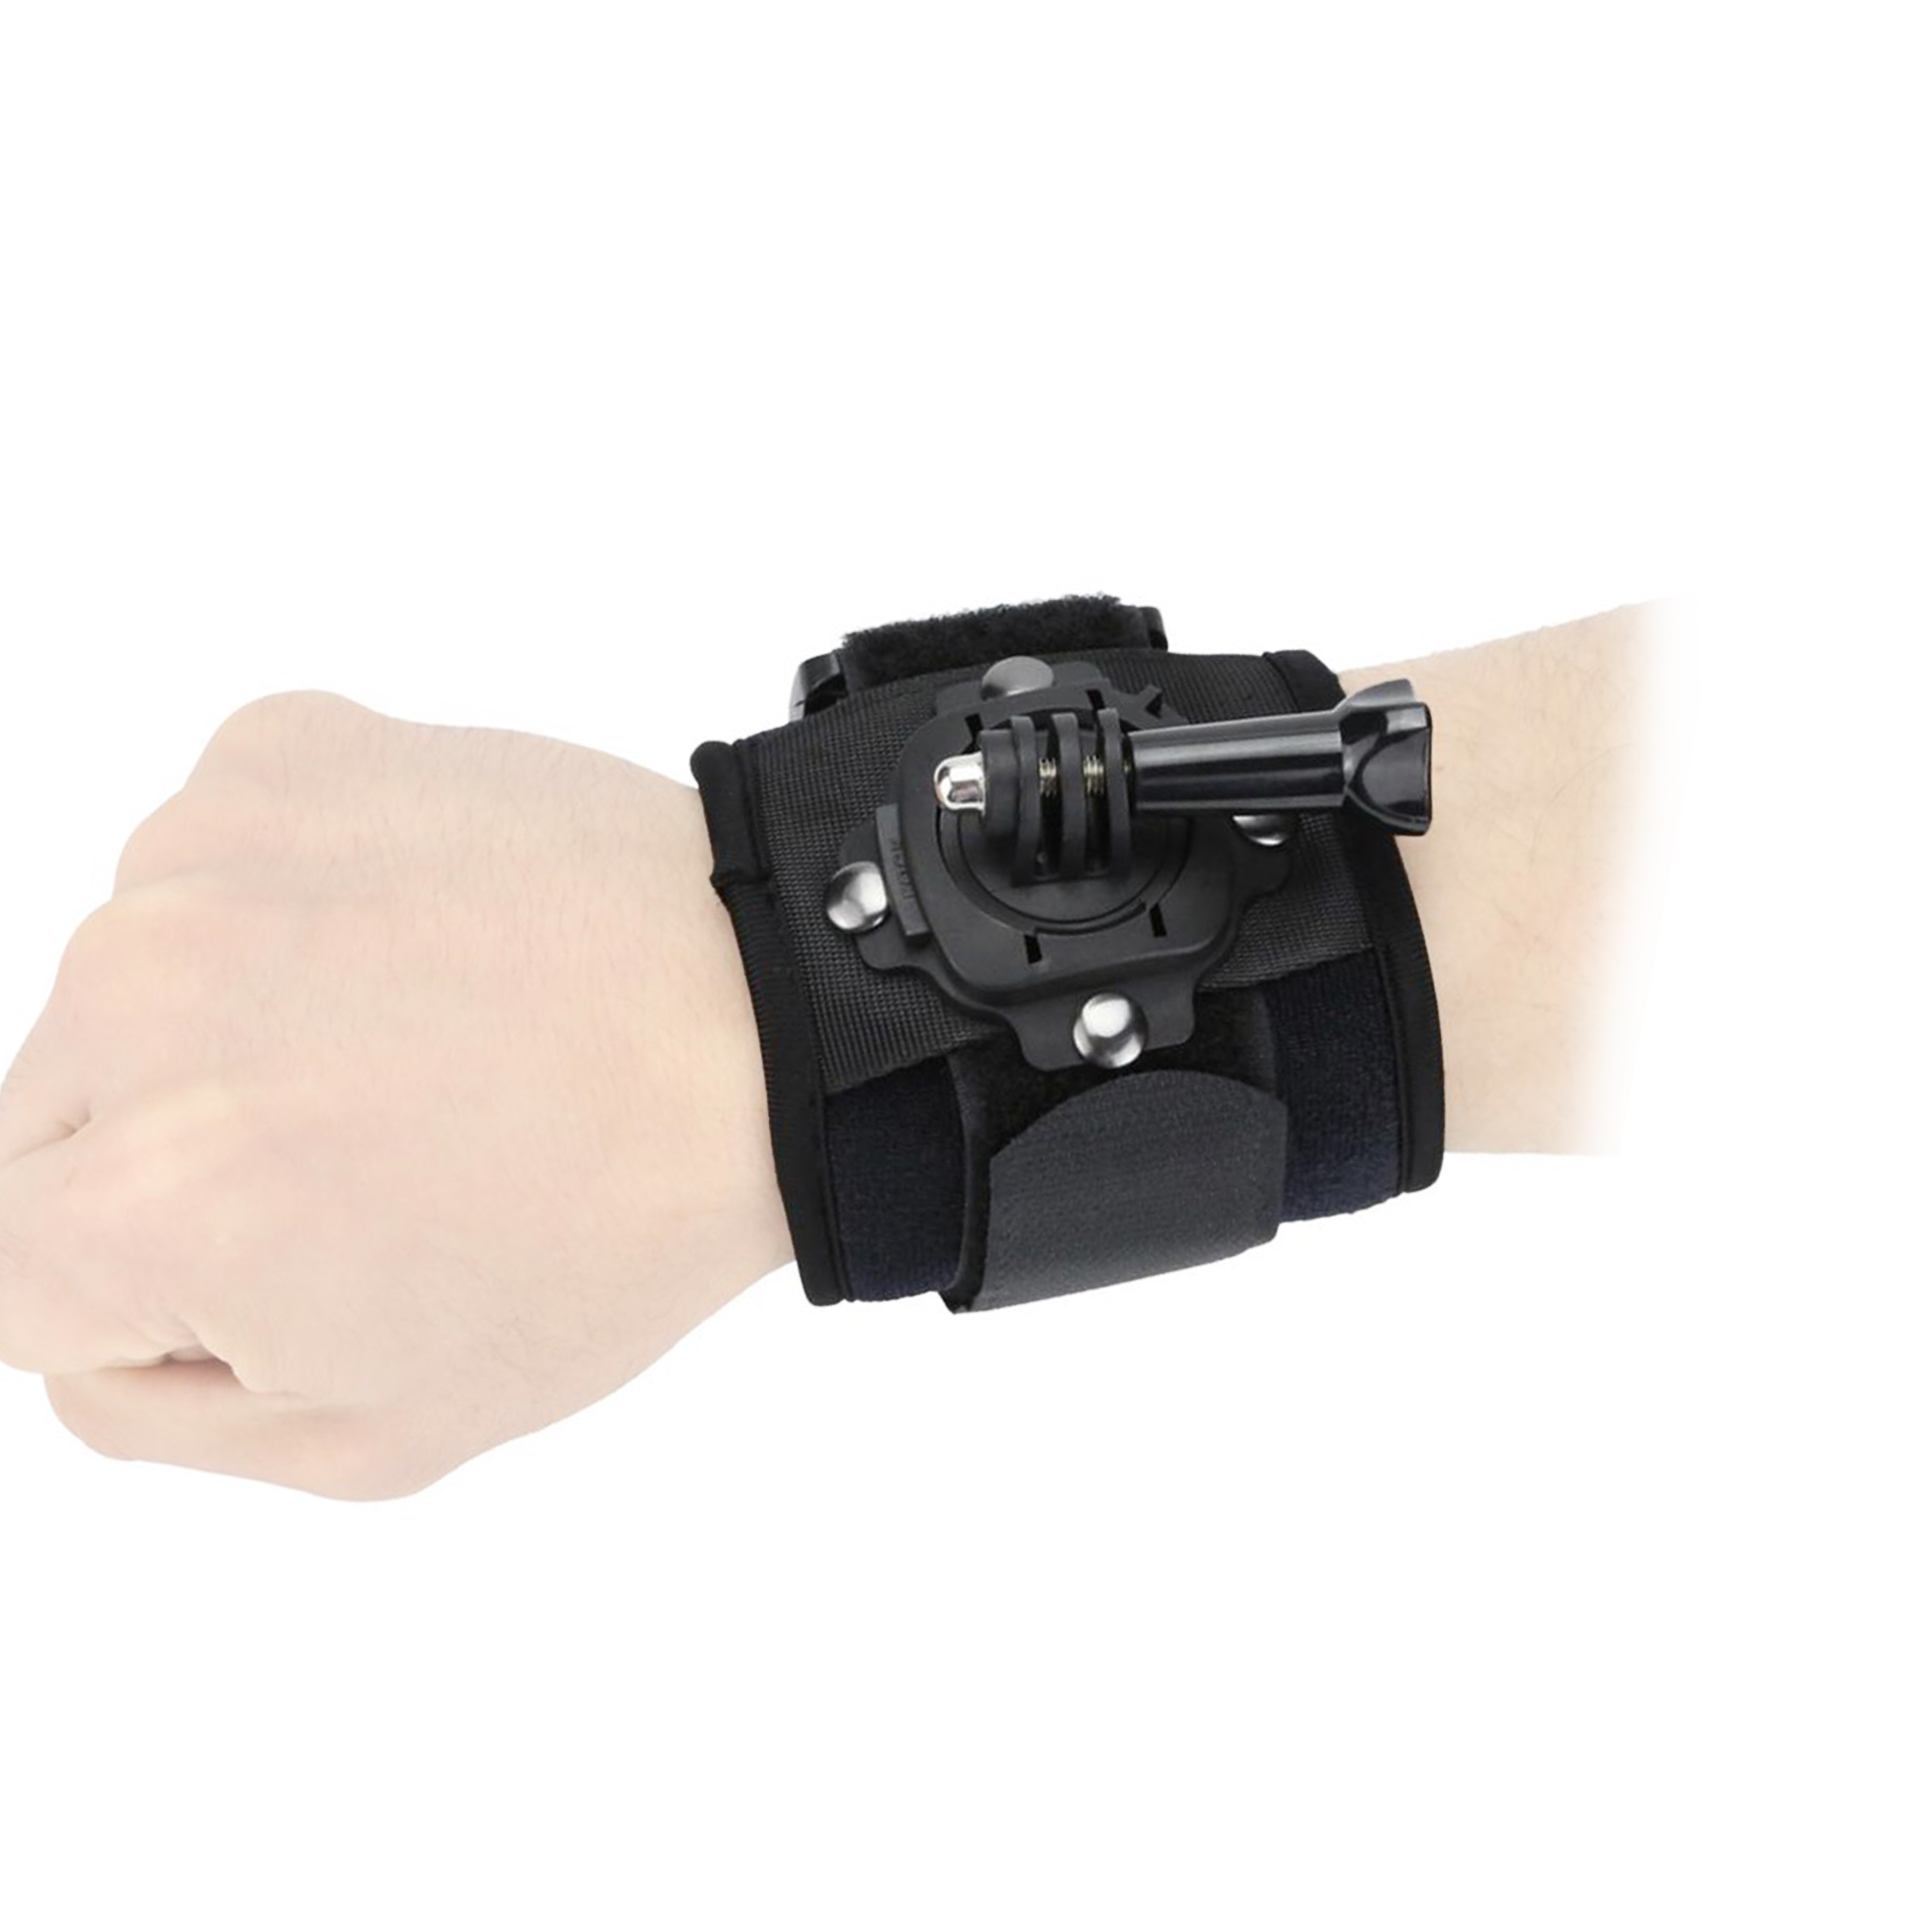 Black Wrist Action-Cams, Handgelenkbandage, GoPro andere für Strap AYEX und